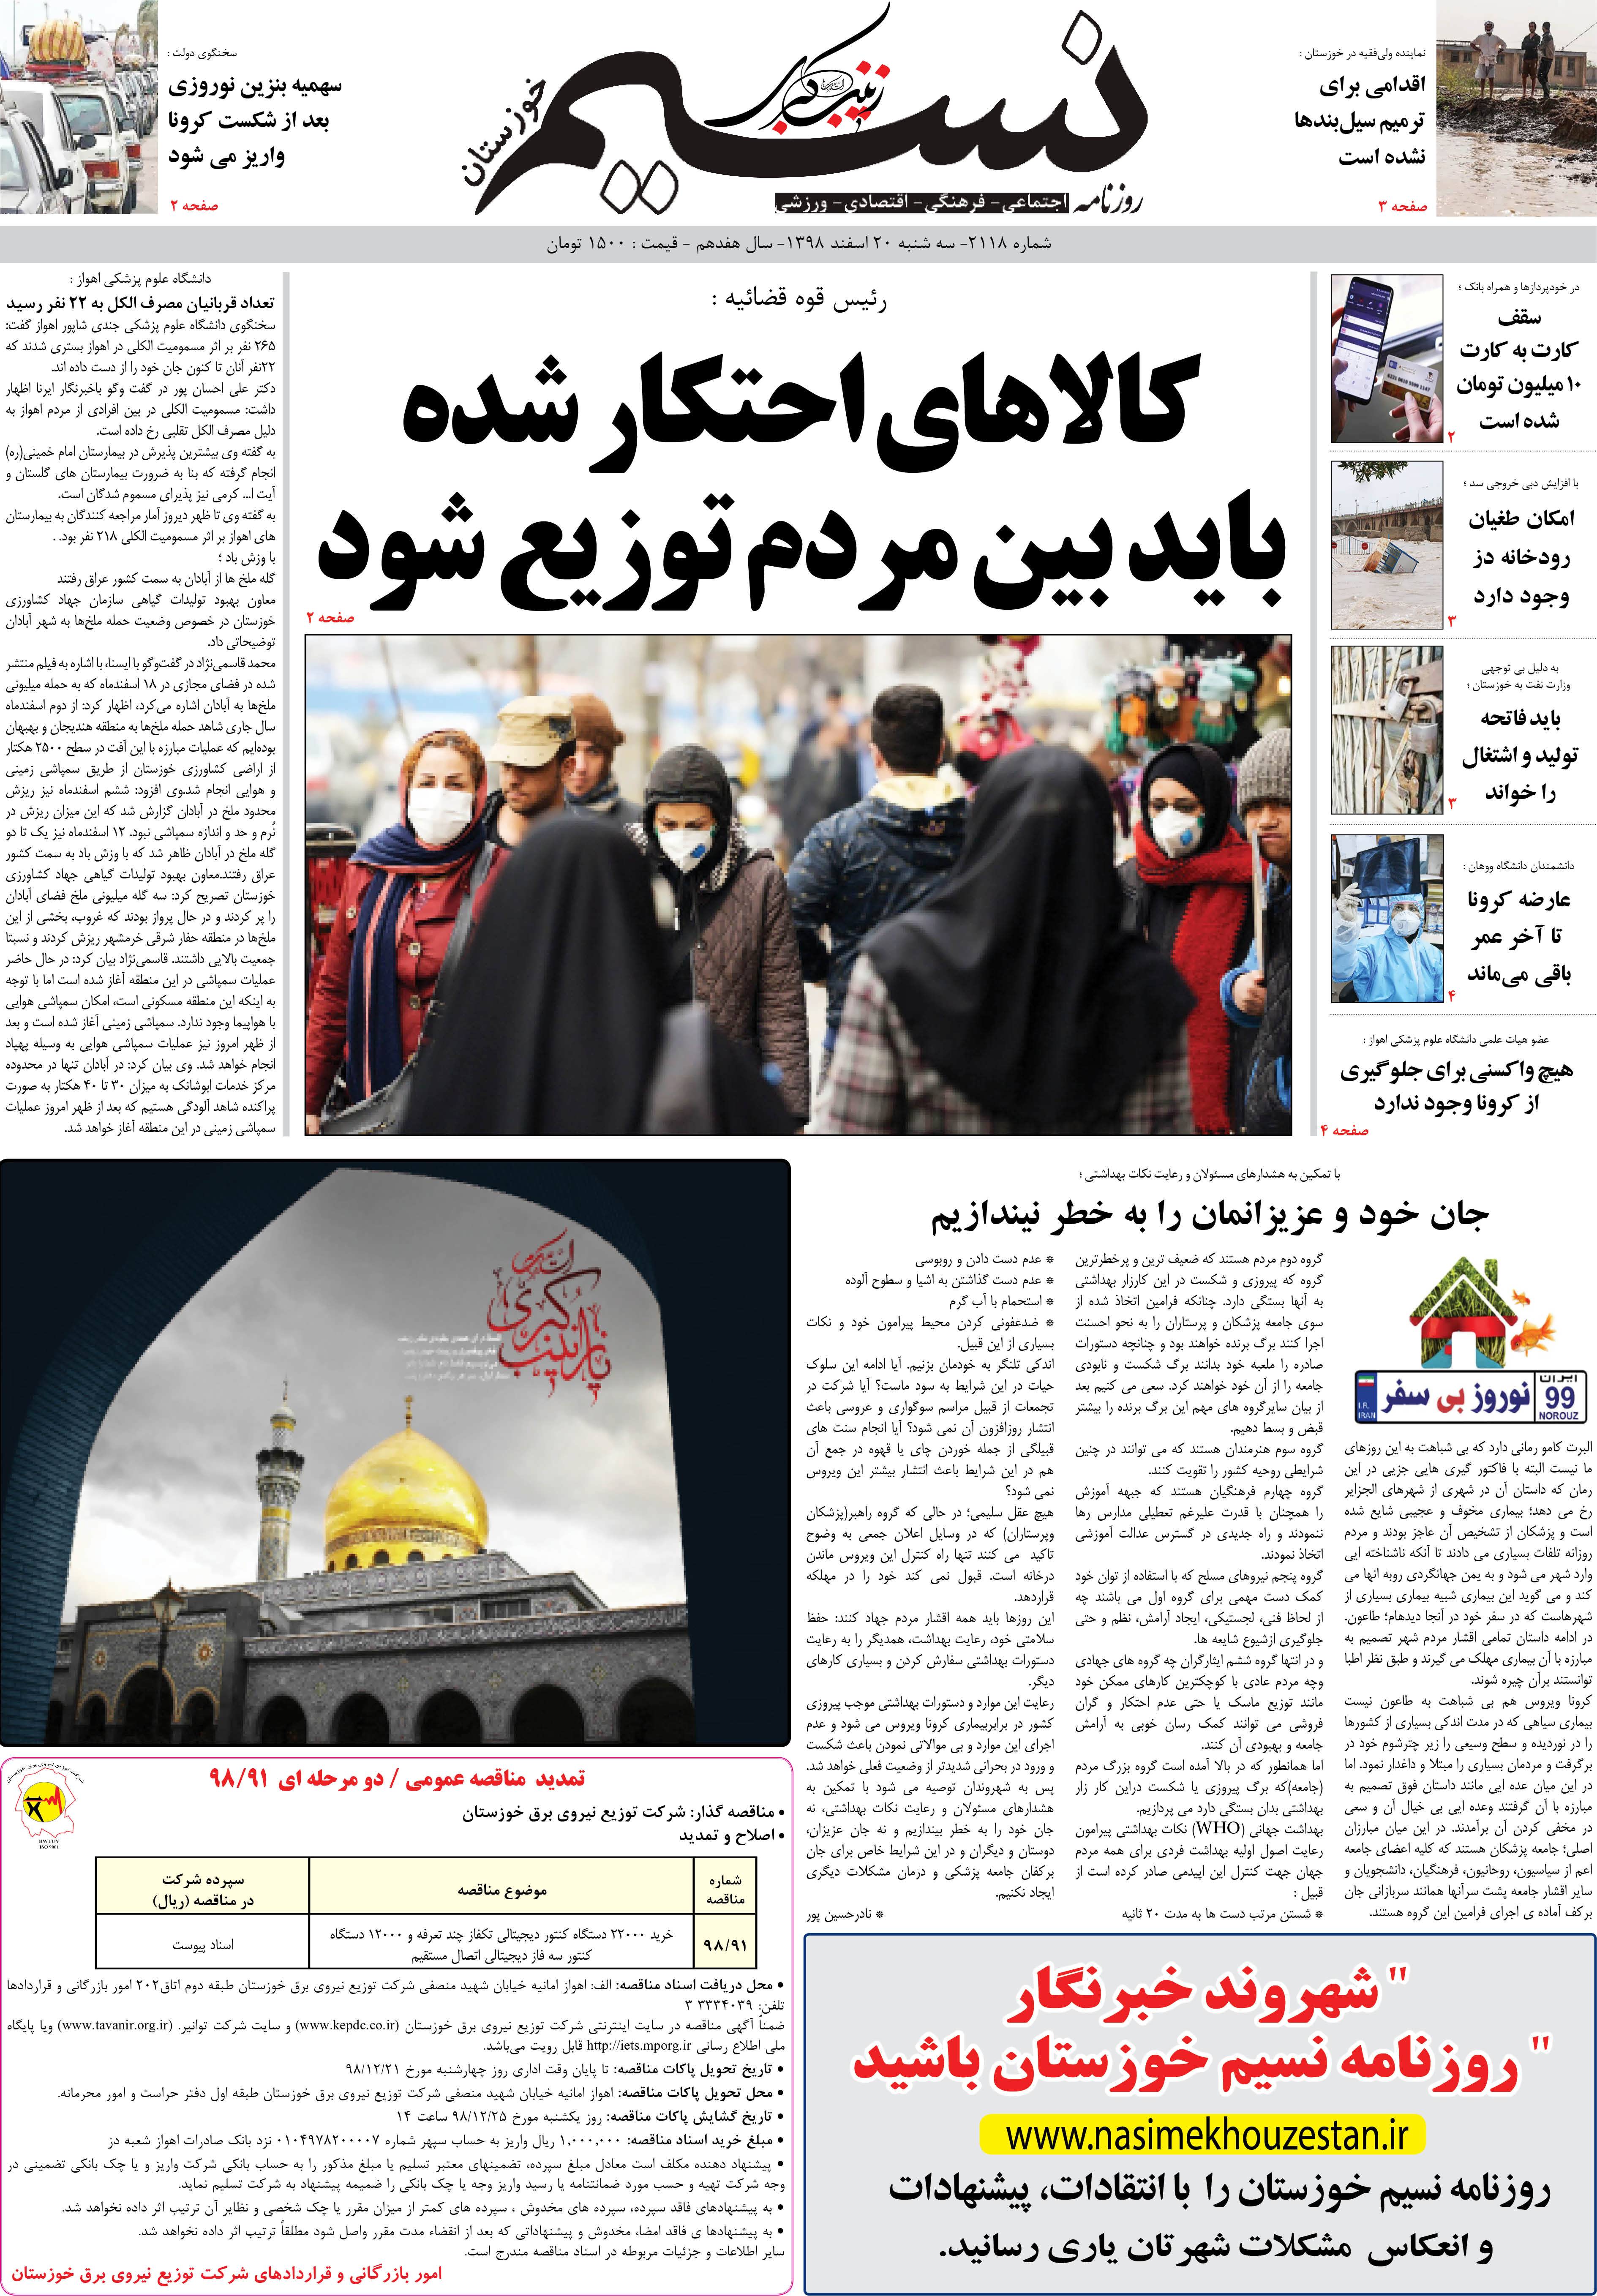 صفحه اصلی روزنامه نسیم شماره 2118 